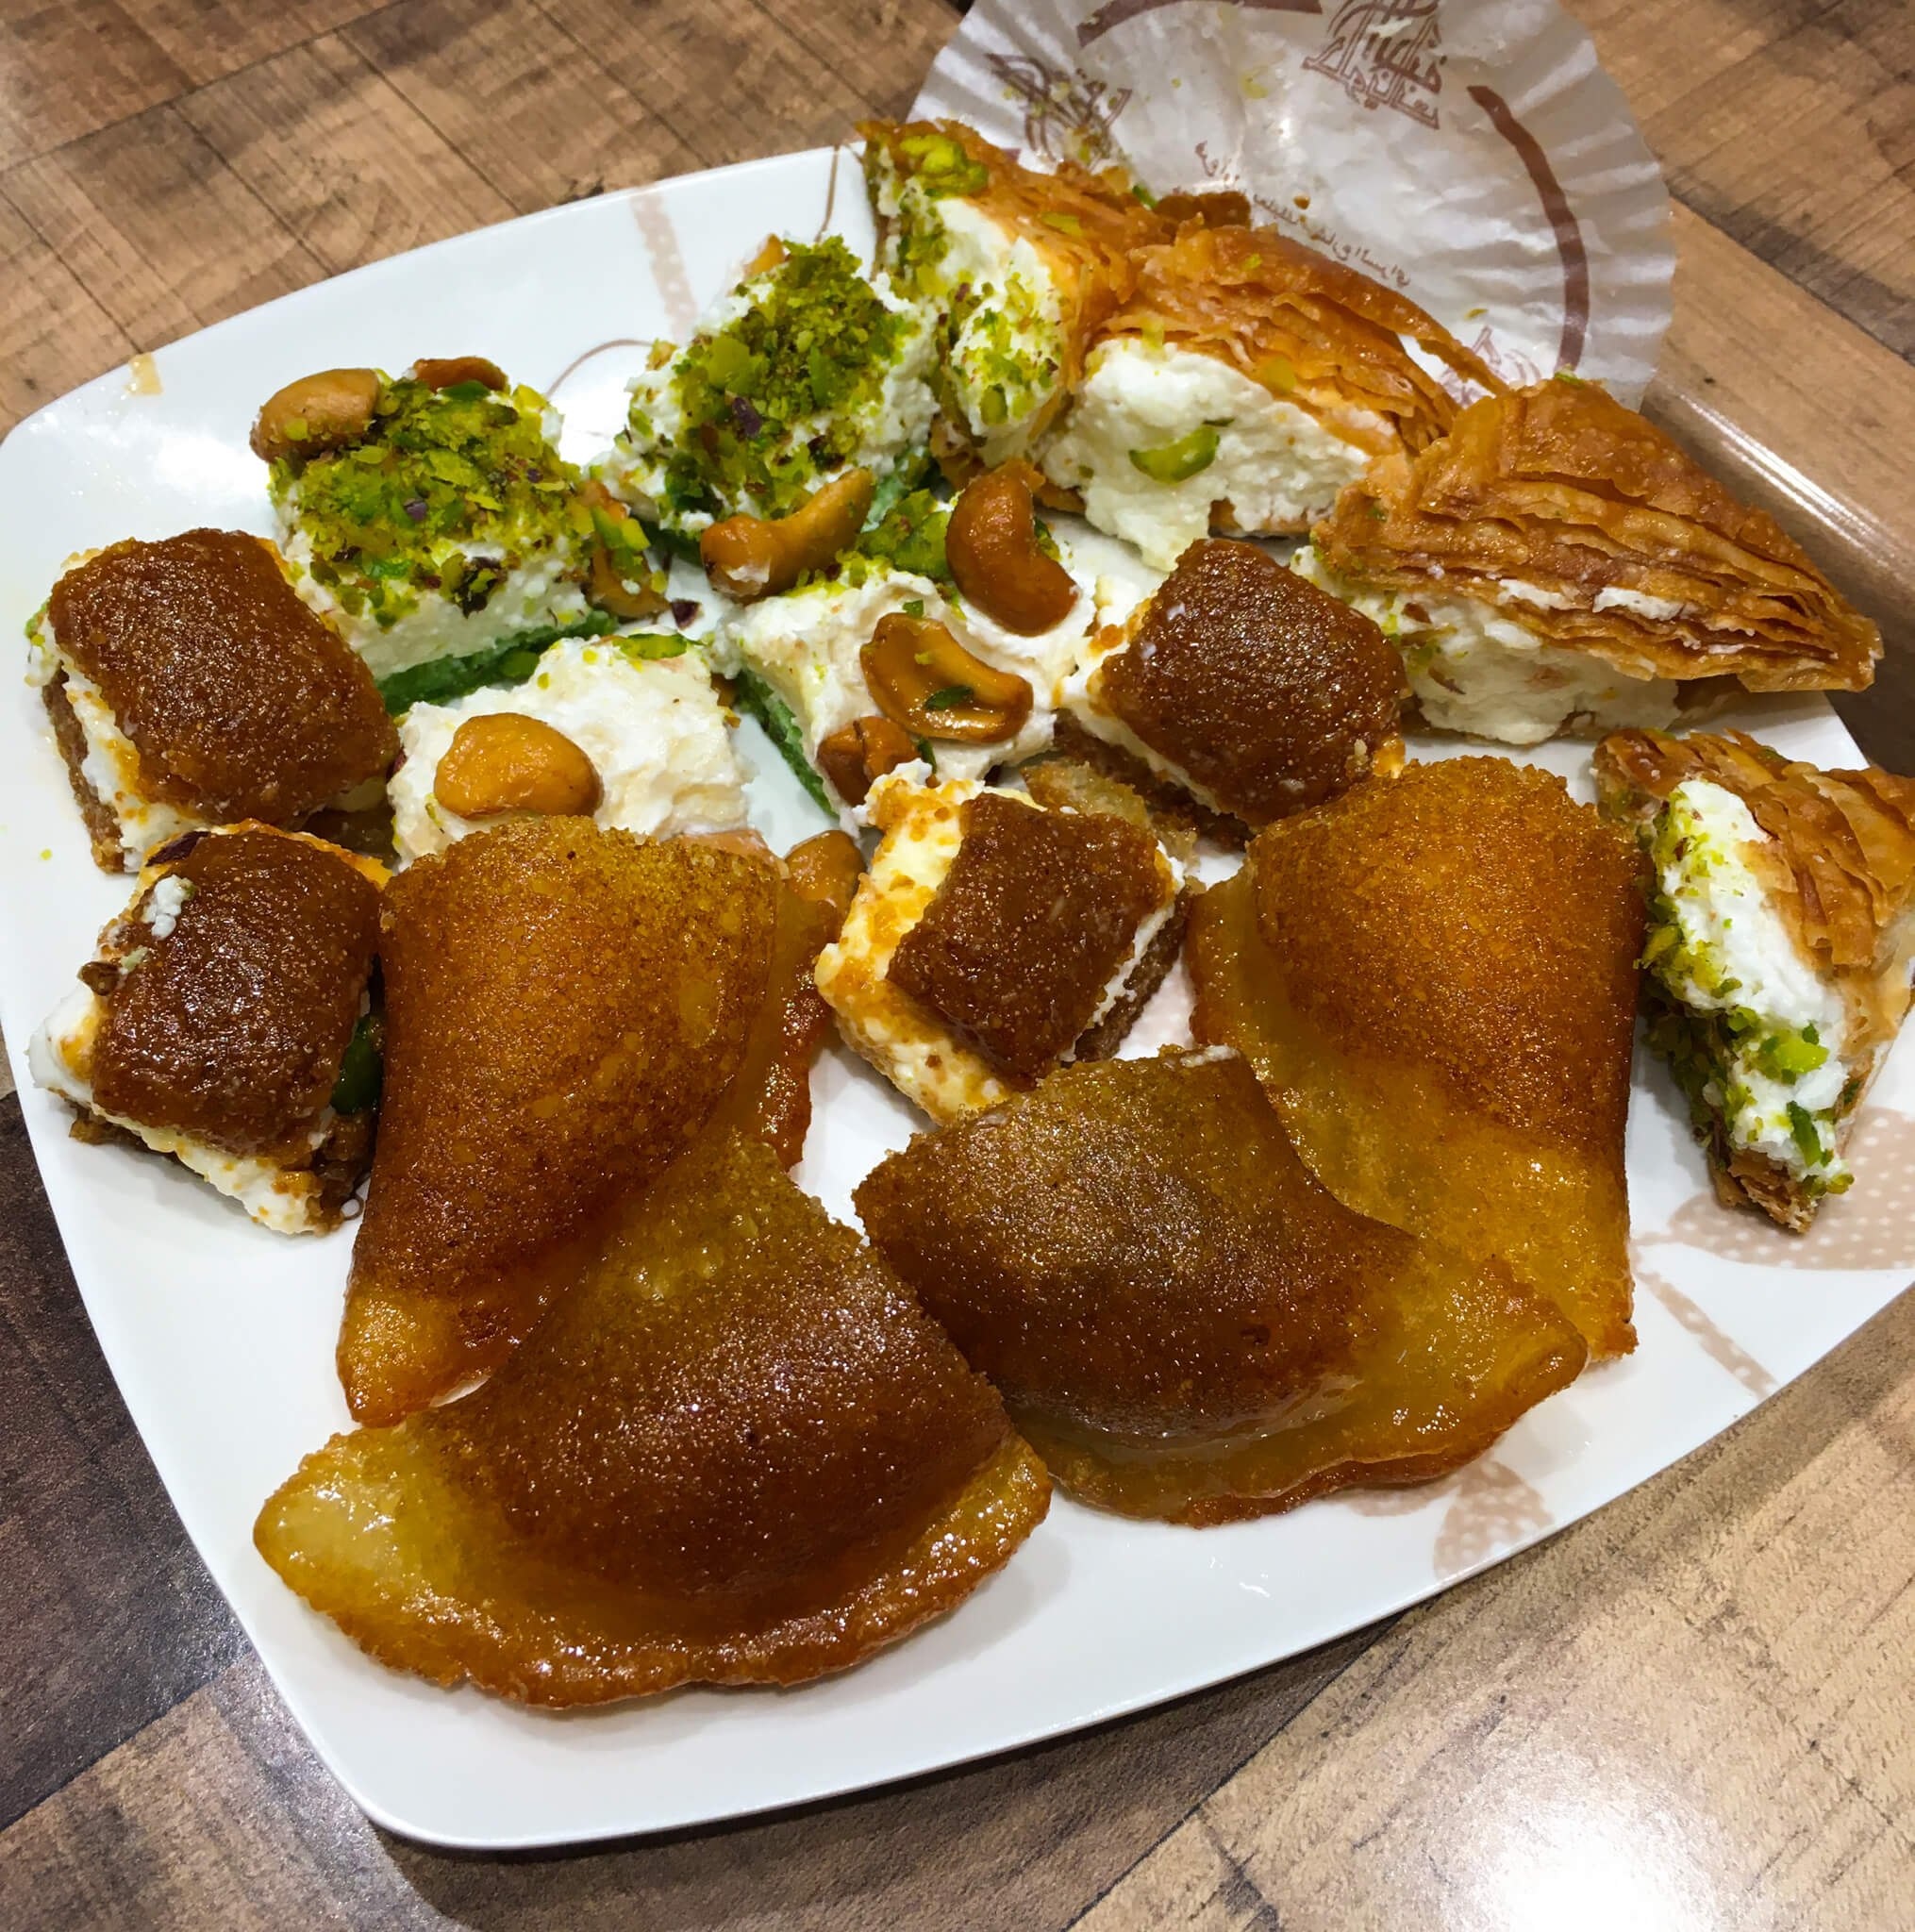 A selection of Lebanese sweets